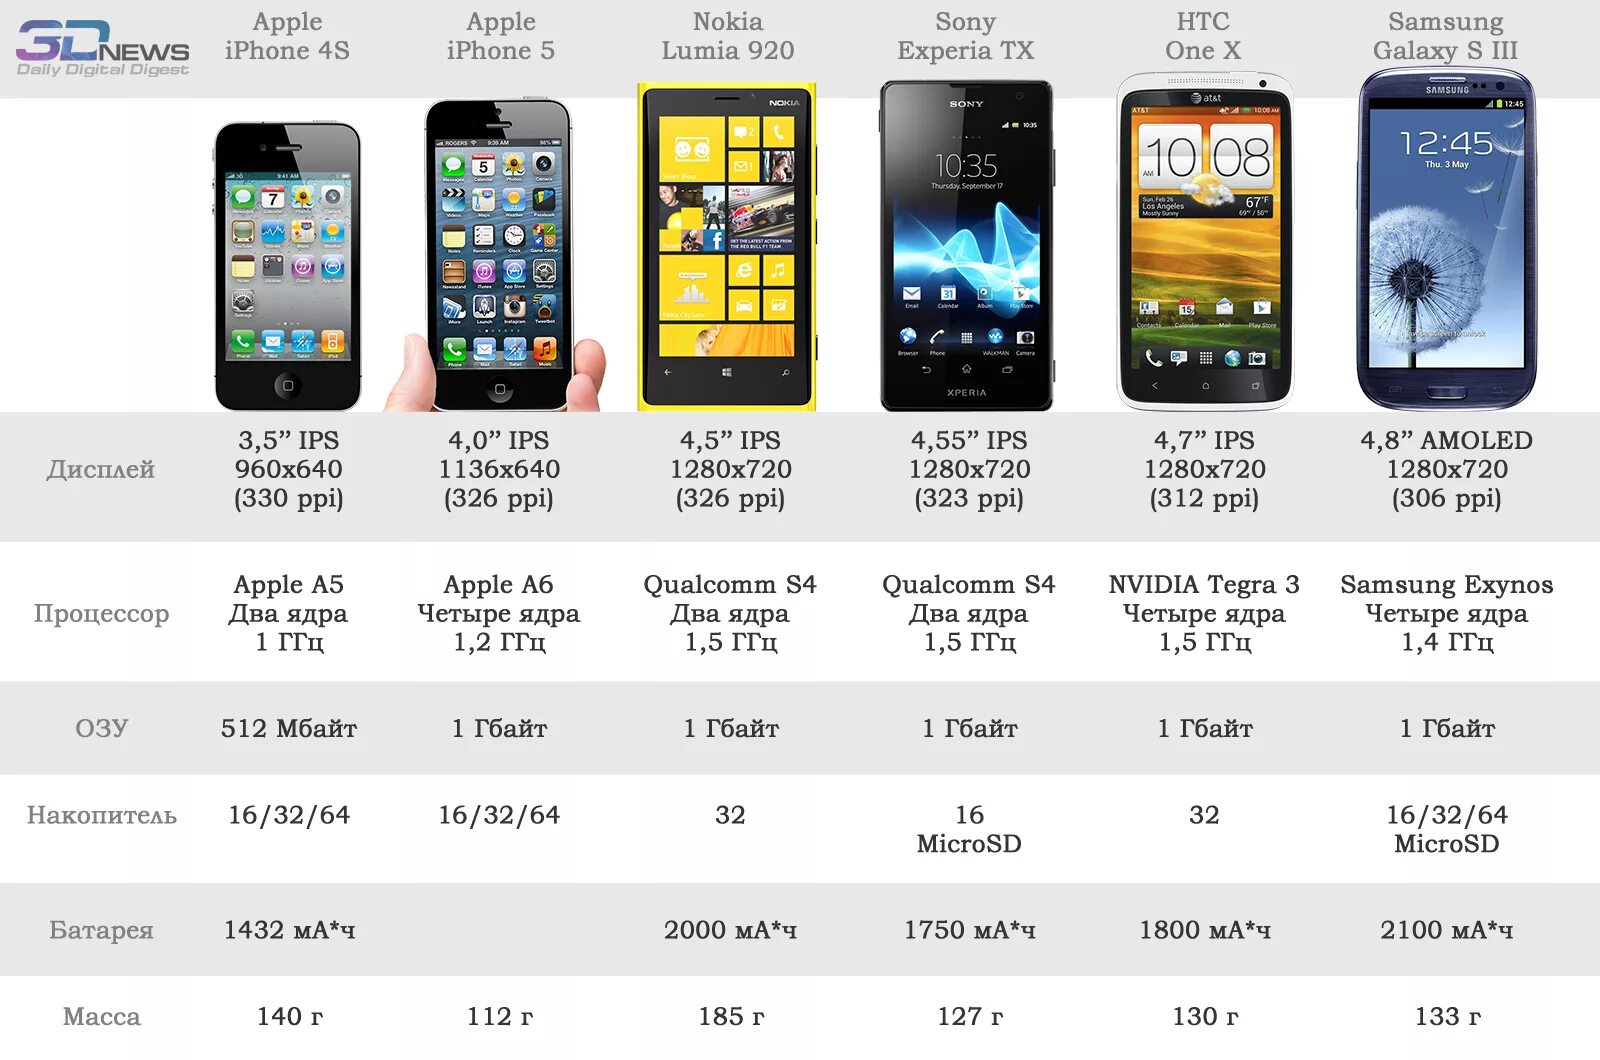 Телефон на 5 мегабайтах. Iphone 5 характеристики моделей. Айфон 5 параметры. Характеристики смартфона. Габариты современных смартфонов.